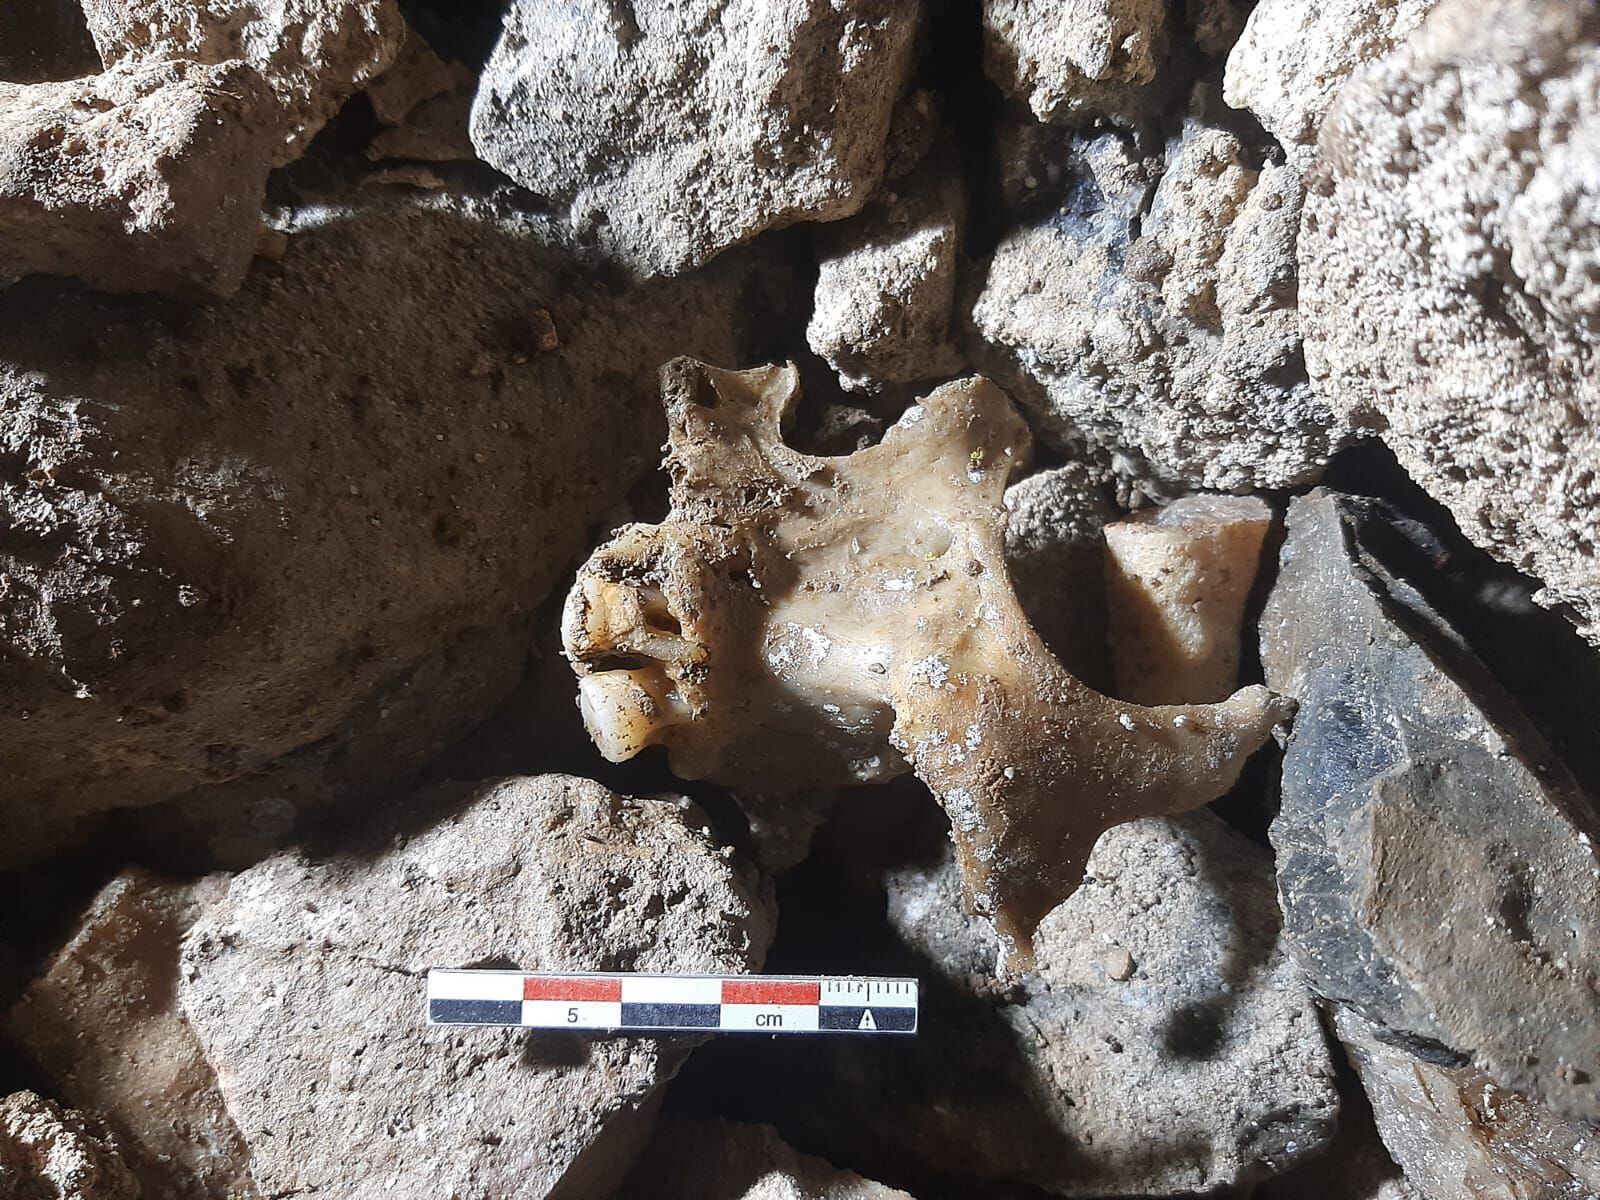 Detalle de un hueso encontrado en la sima de ‘La Sobia’ en el concejo asturiano de Teverga.